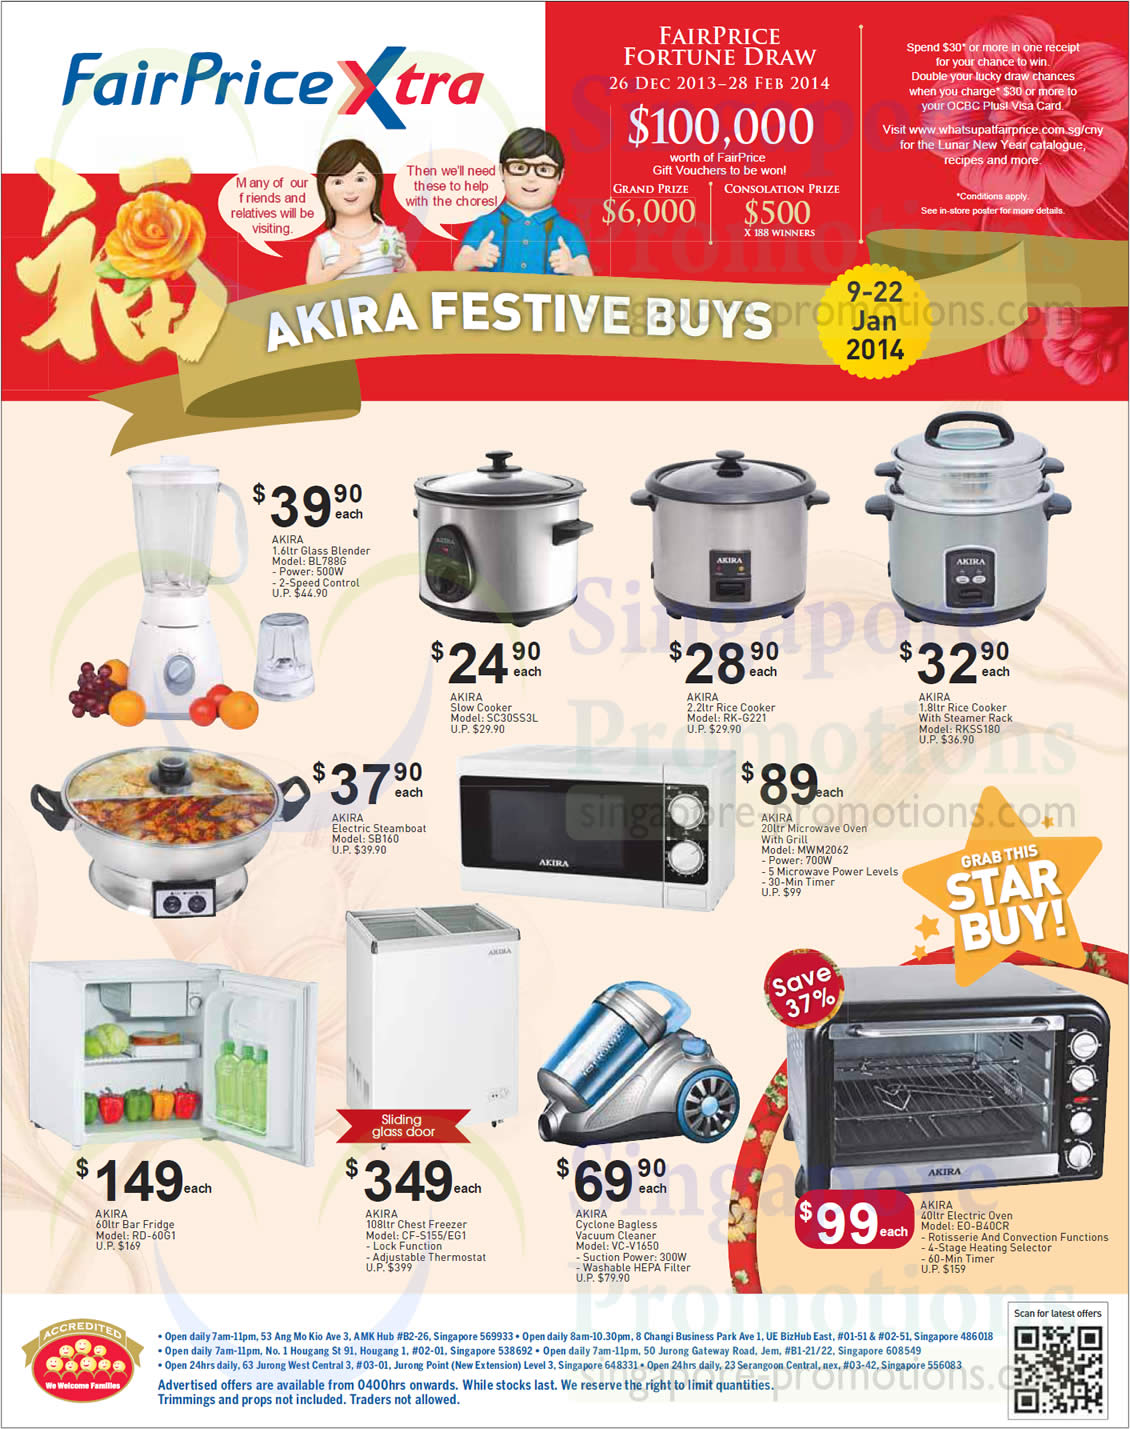 Akira Festive Buys Blender, Rice Cooker, Microwave Oven, Fridge